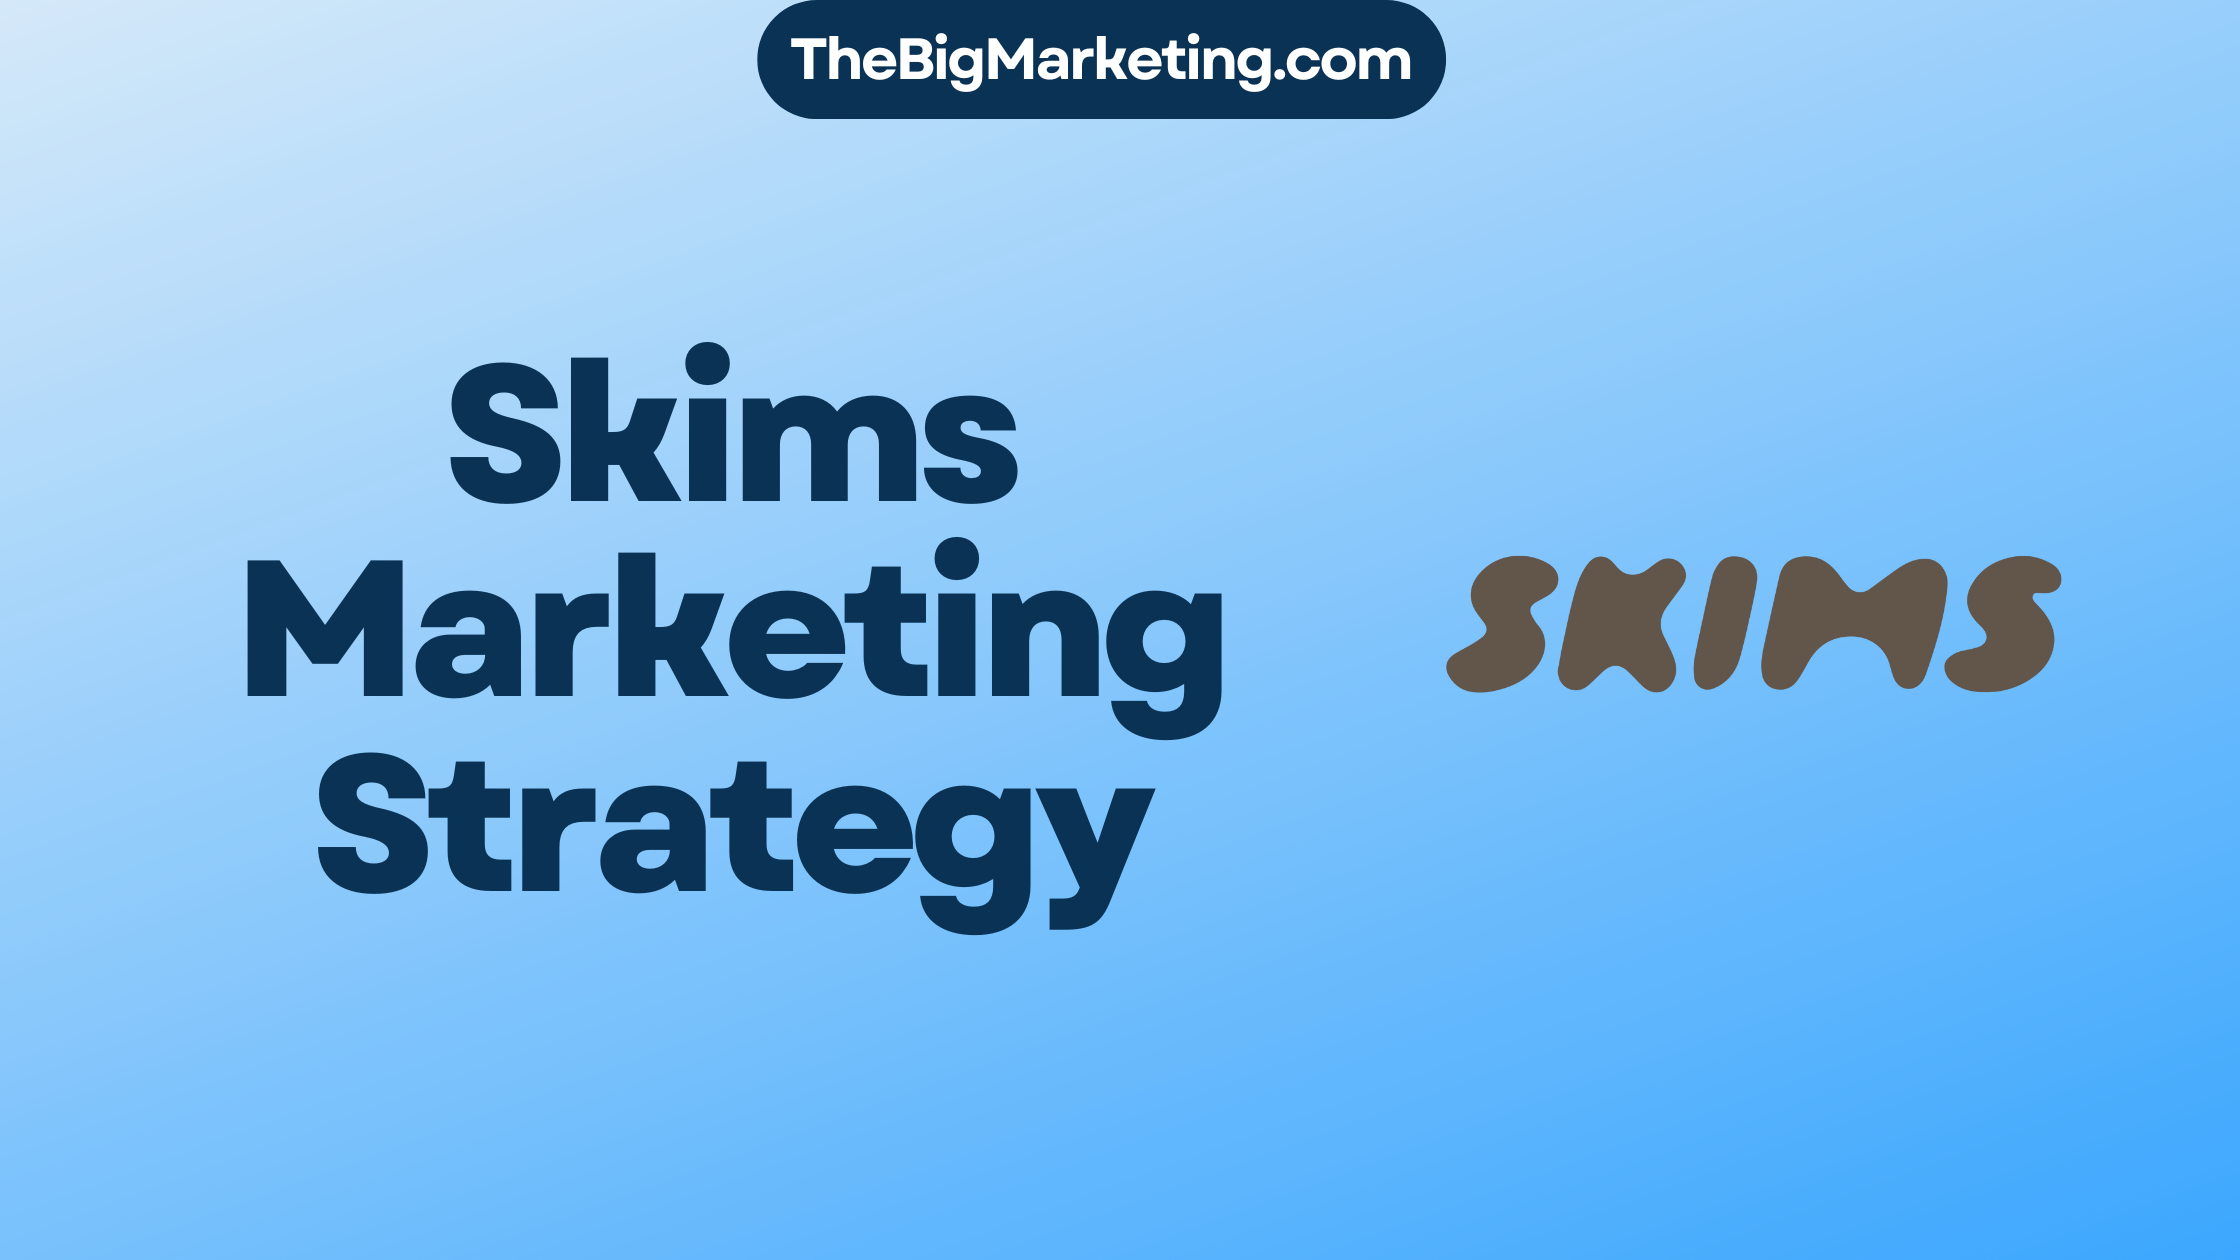 Skims Marketing Strategy